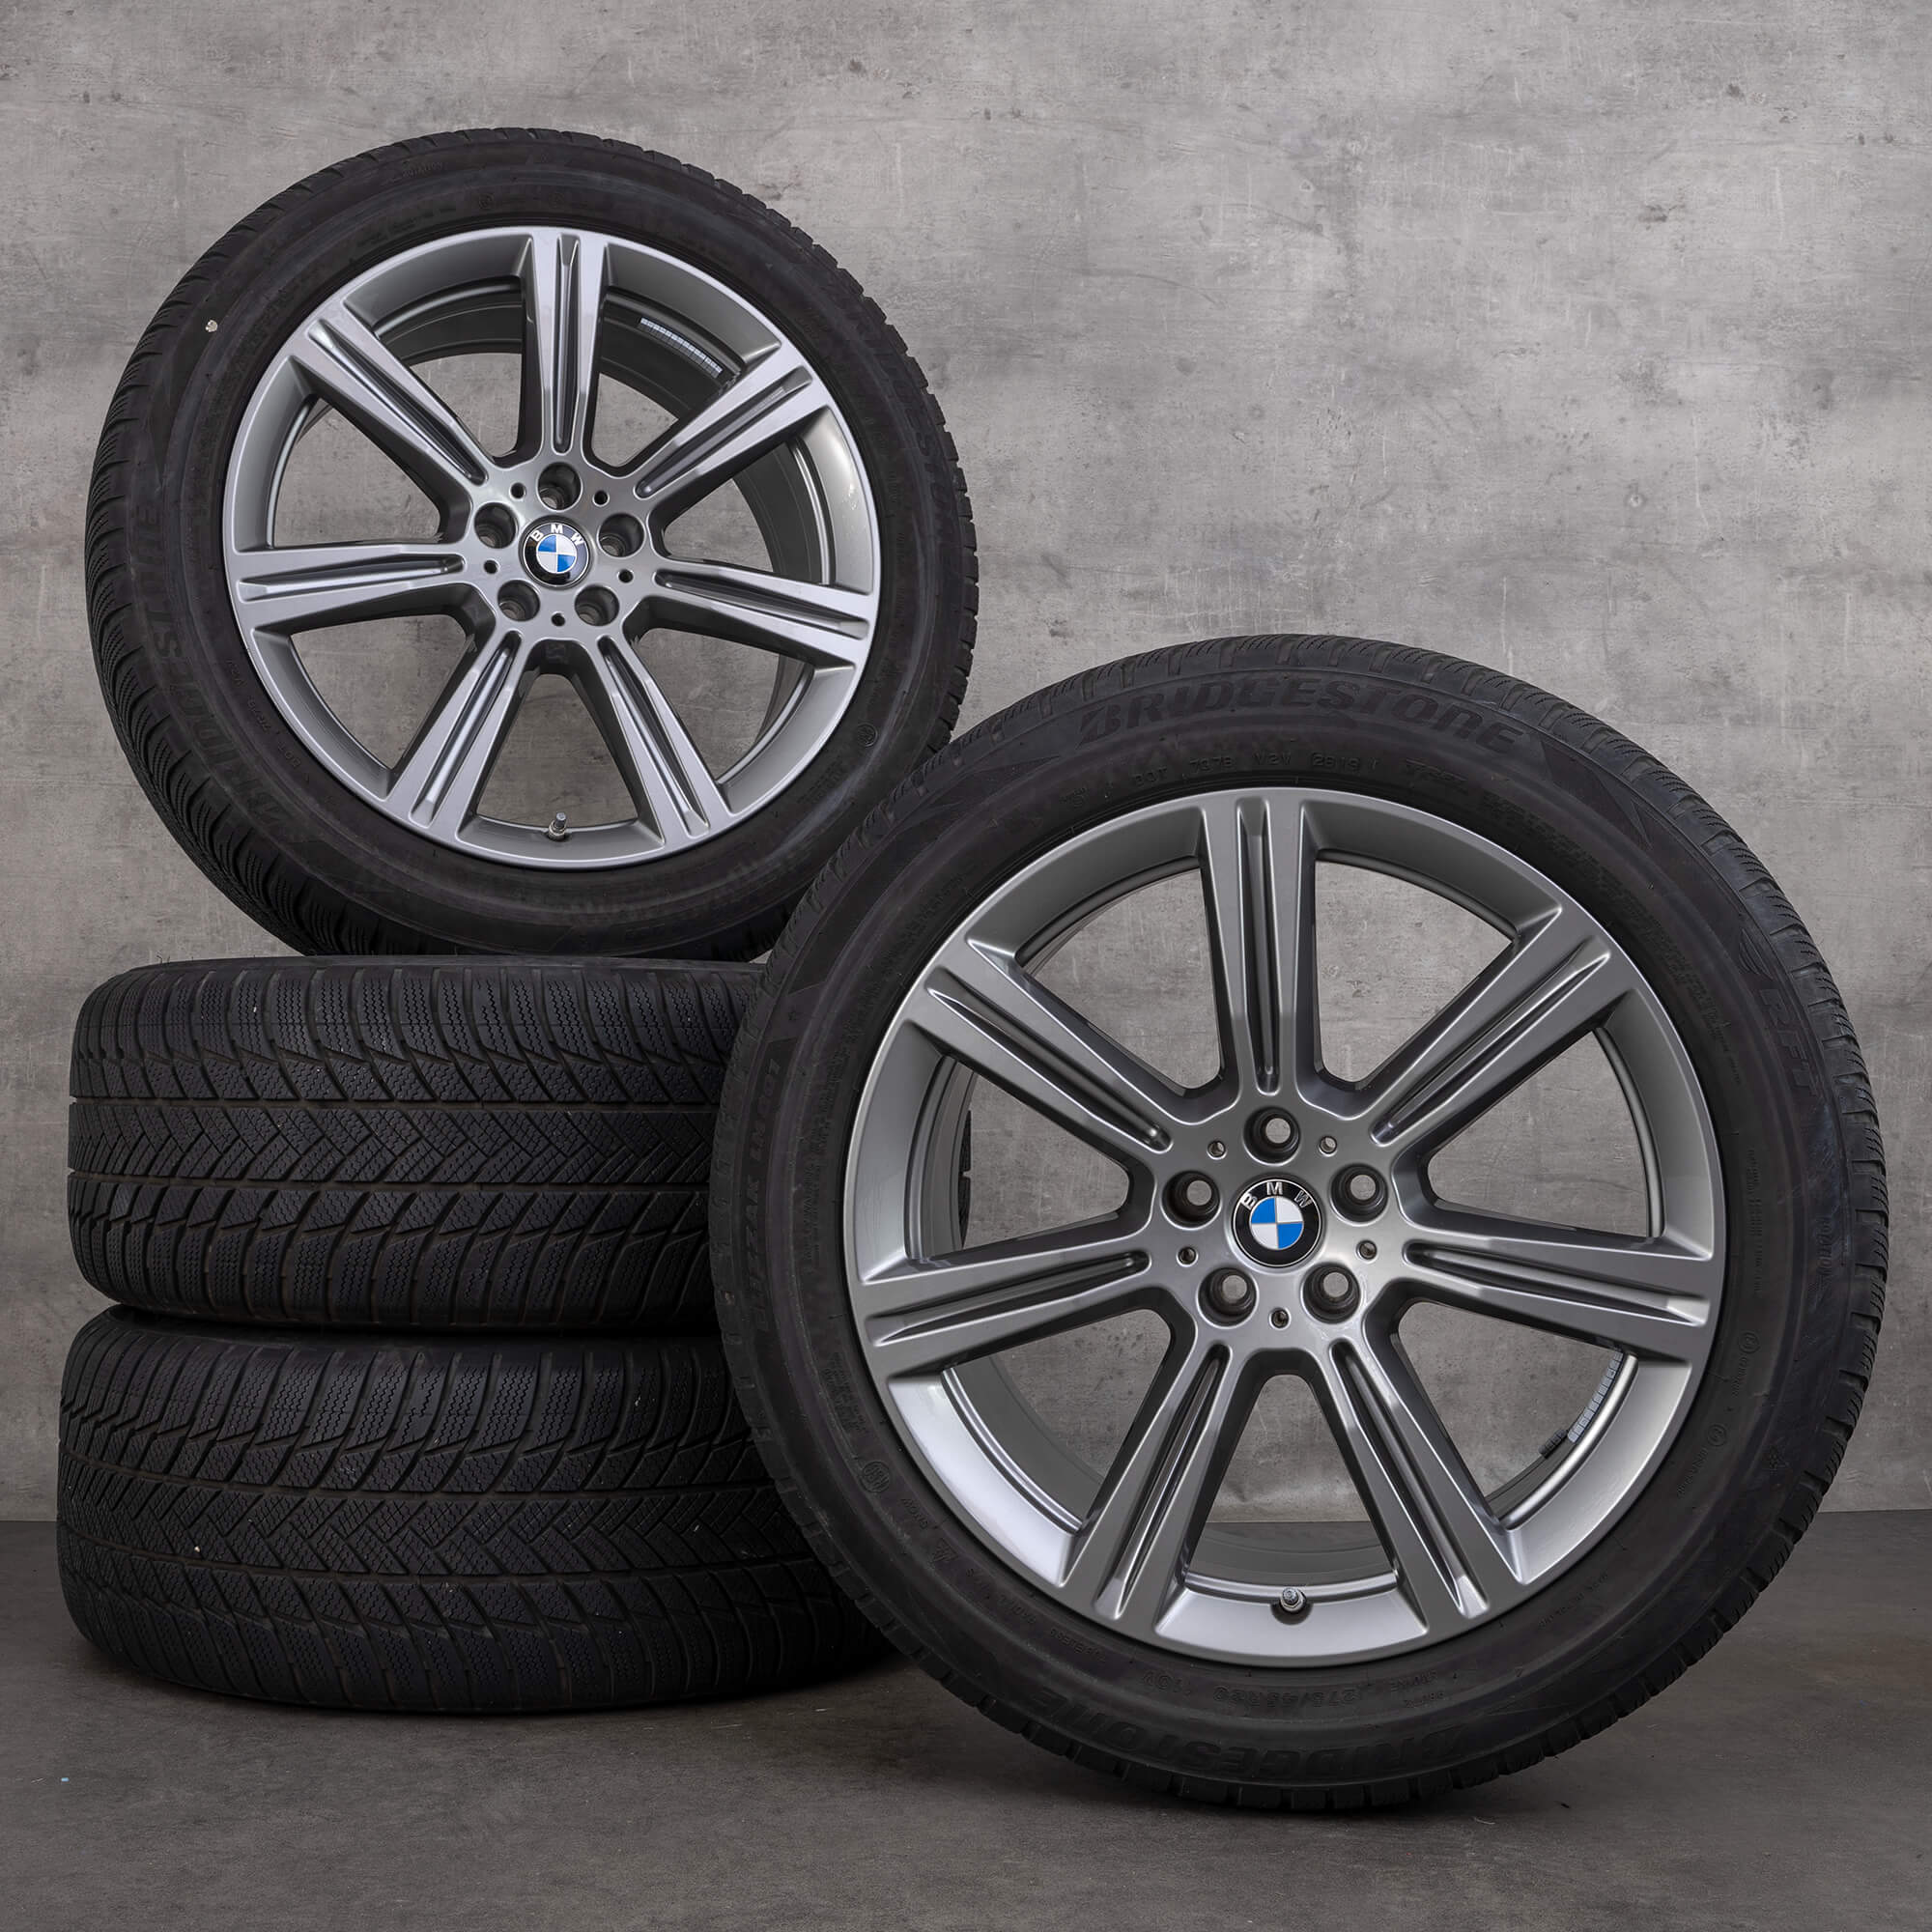 BMW jantes 20 pouces X5 G05 X6 G06 style 736 pneus hiver roues 6883753